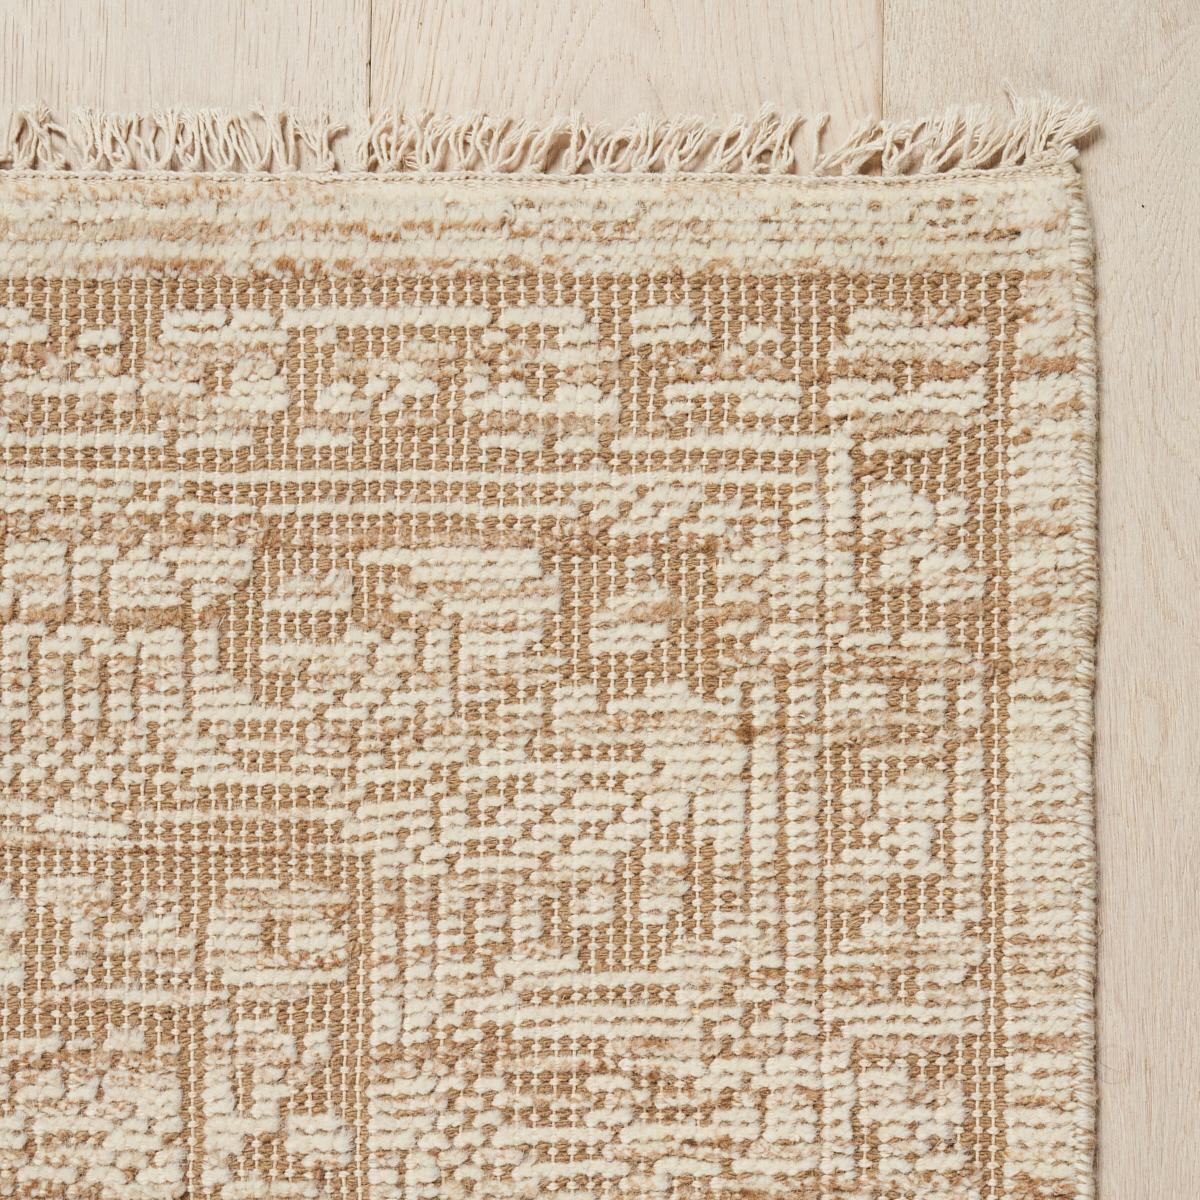 Unser handgeknüpfter Wollteppich Ankara ist ein vielseitiges Übergangsdesign, das an die komplizierten Muster und Randdetails antiker Stammesteppiche erinnert. Dieser Teppich aus weicher 100%iger Wolle verleiht jedem Raum ein raffiniertes, dezentes